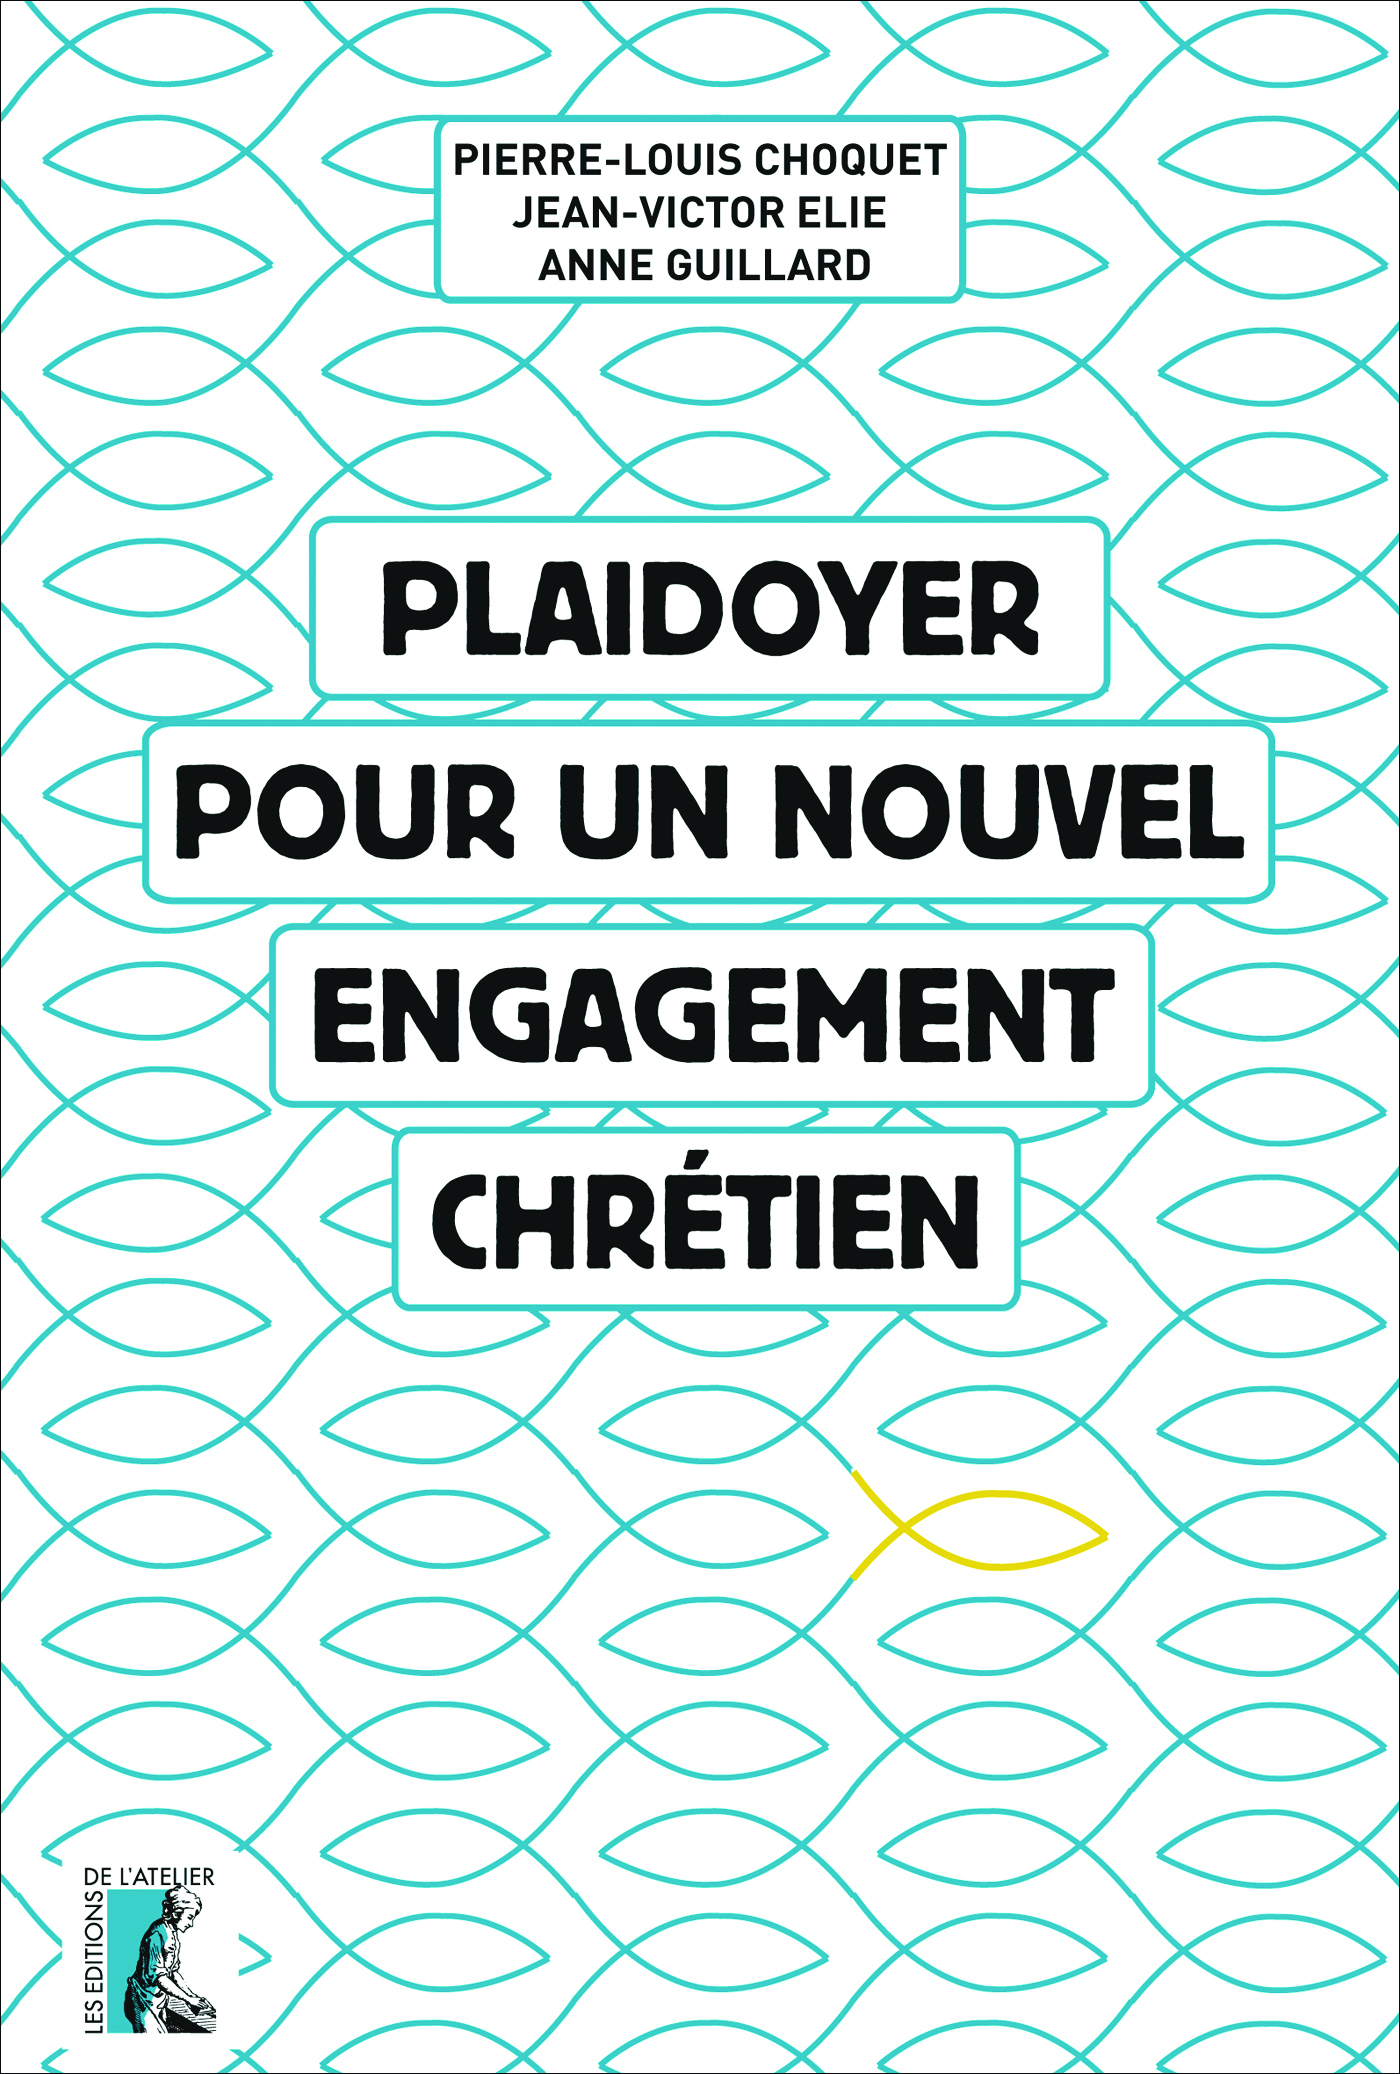 Plaidoyer pour un nouvel engagement chrétien - Pierre-Louis Choquet, Anne Guillard, Jean-Victor Elie - Éditions de l'Atelier